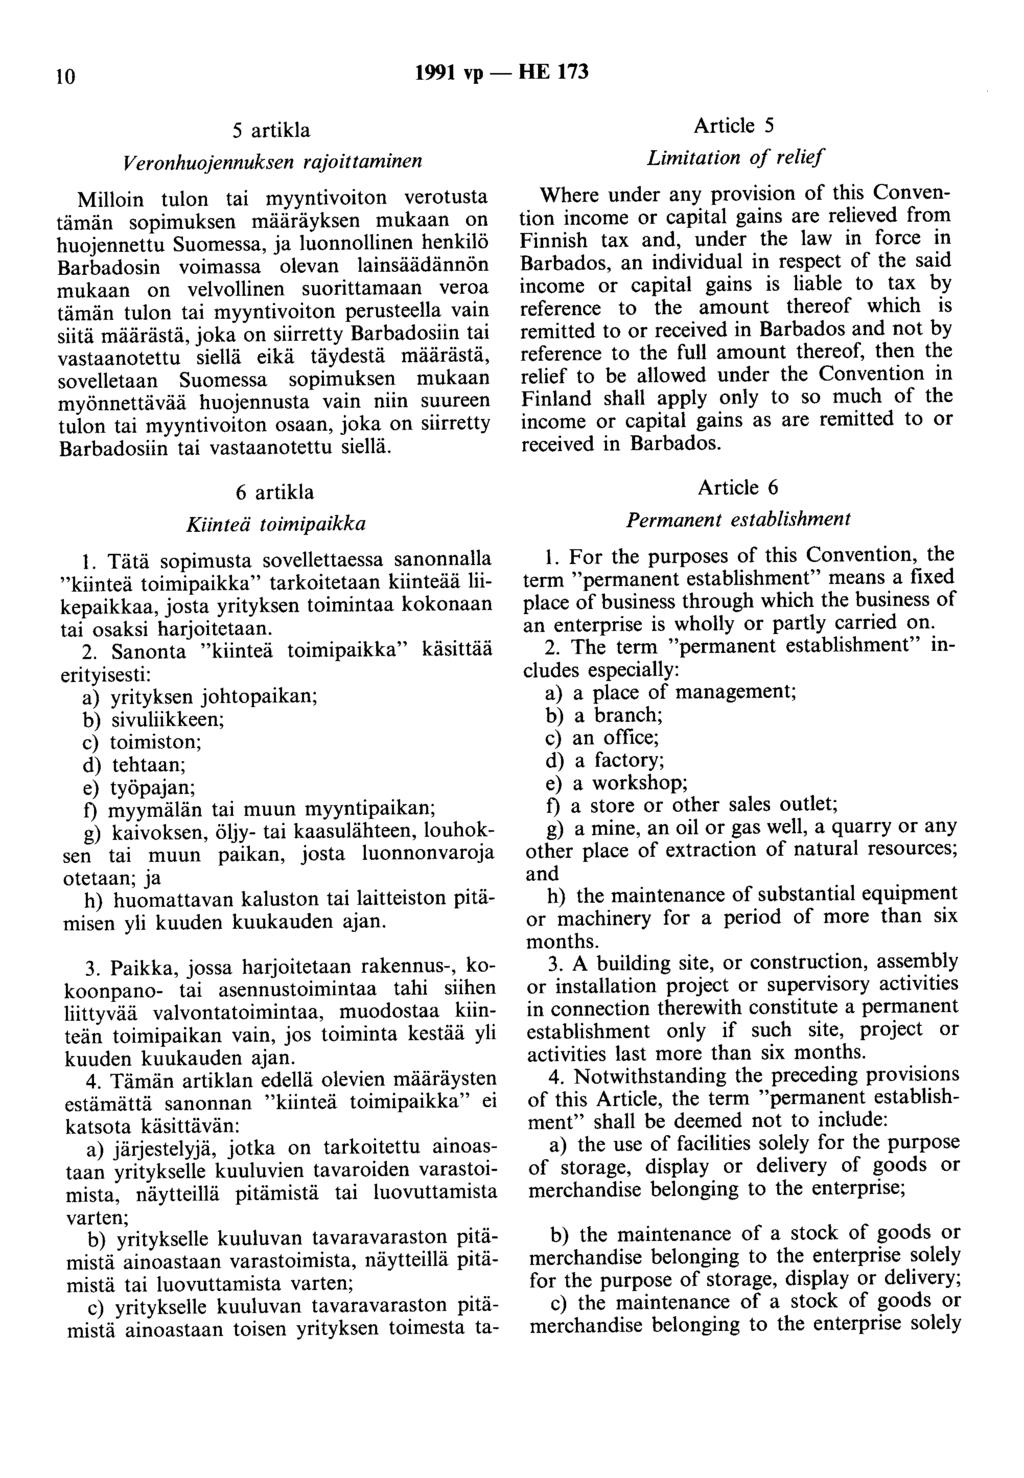 10 1991 vp- HE 173 5 artikla Veronhuojennuksen rajoittaminen Milloin tulon tai myyntivoiton verotusta tämän sopimuksen määräyksen mukaan on huojennettu Suomessa, ja luonnollinen henkilö Barbadosin